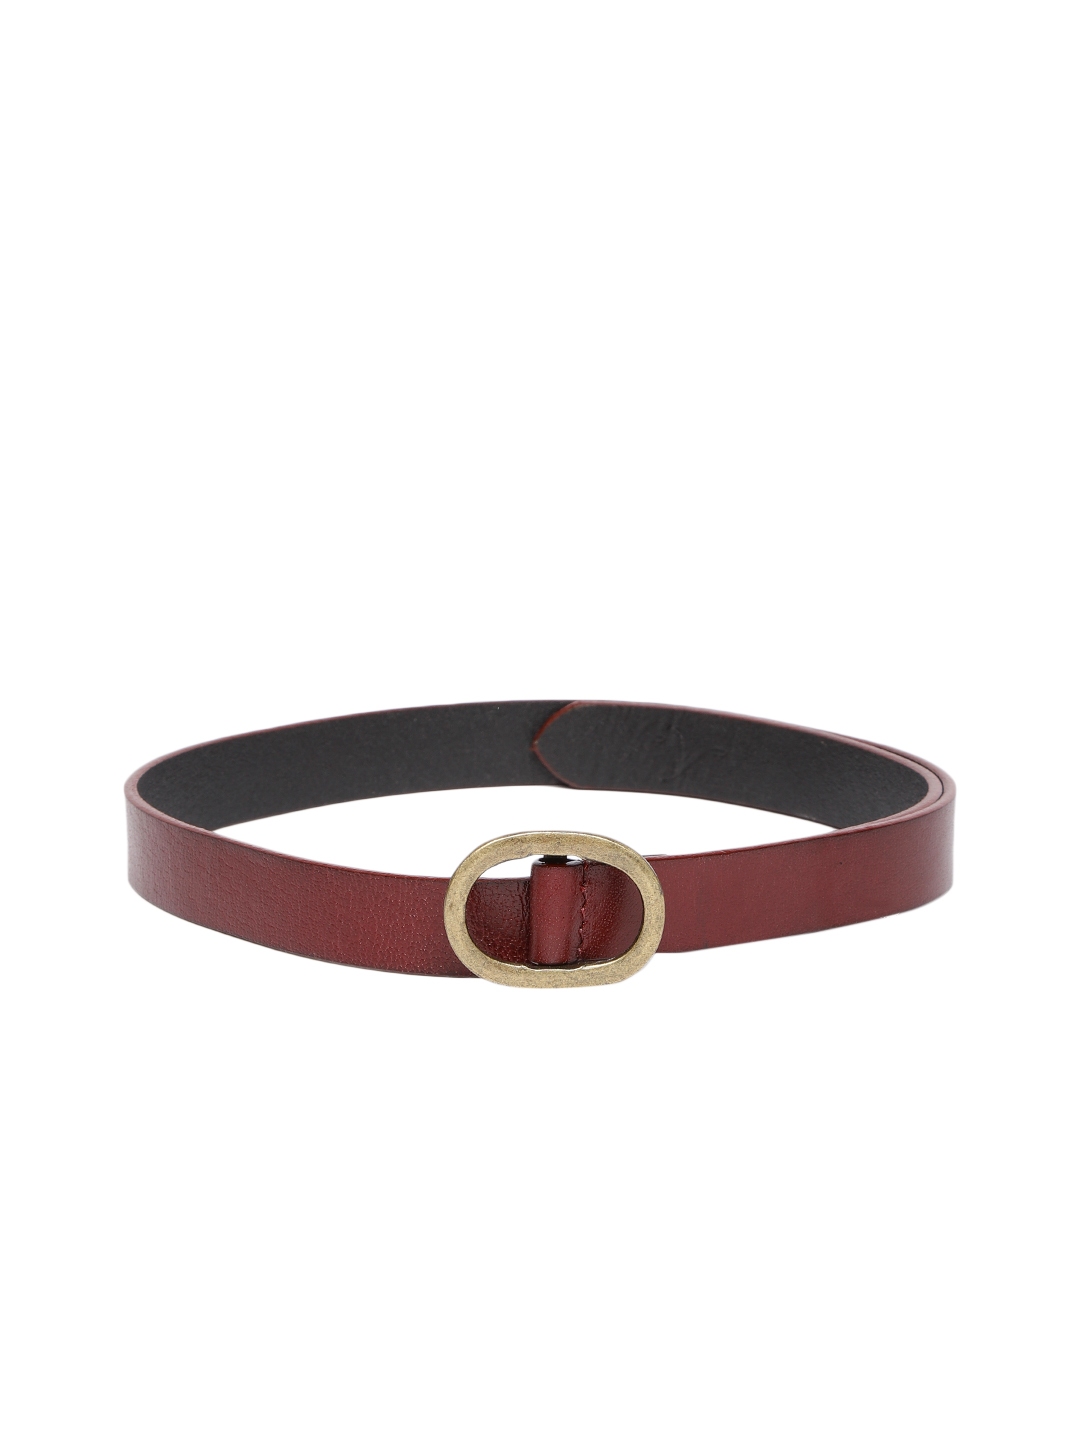 Buy Levis Women Maroon Reversible Solid Leather Belt - Belts for Women ...